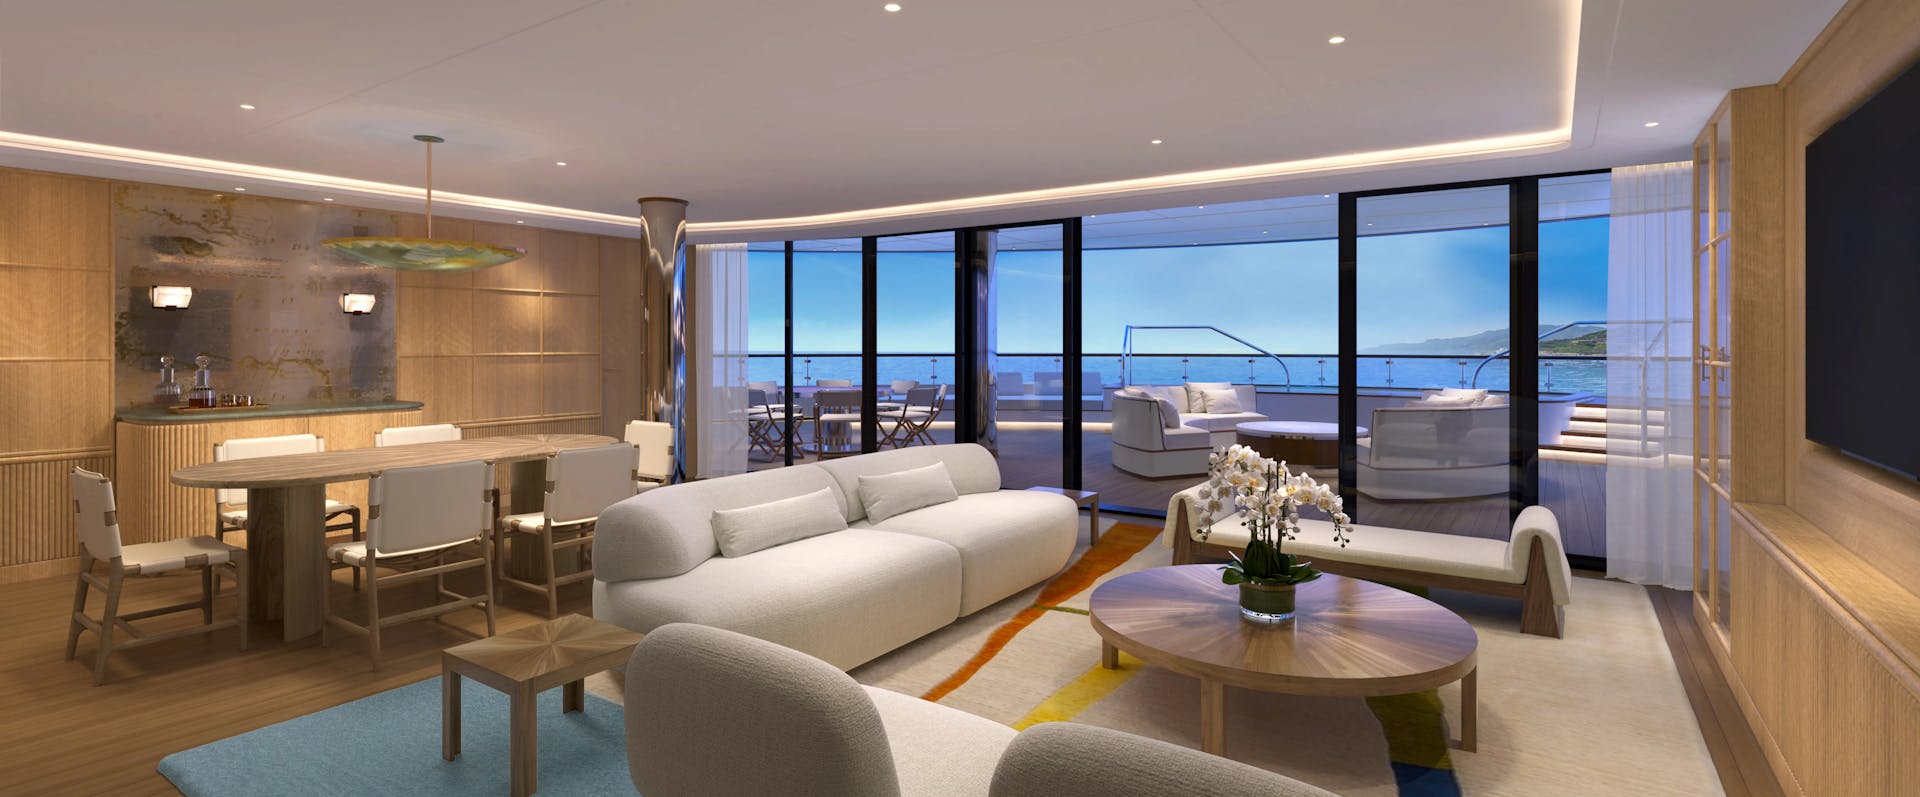 Saint-Tropez Suite living room